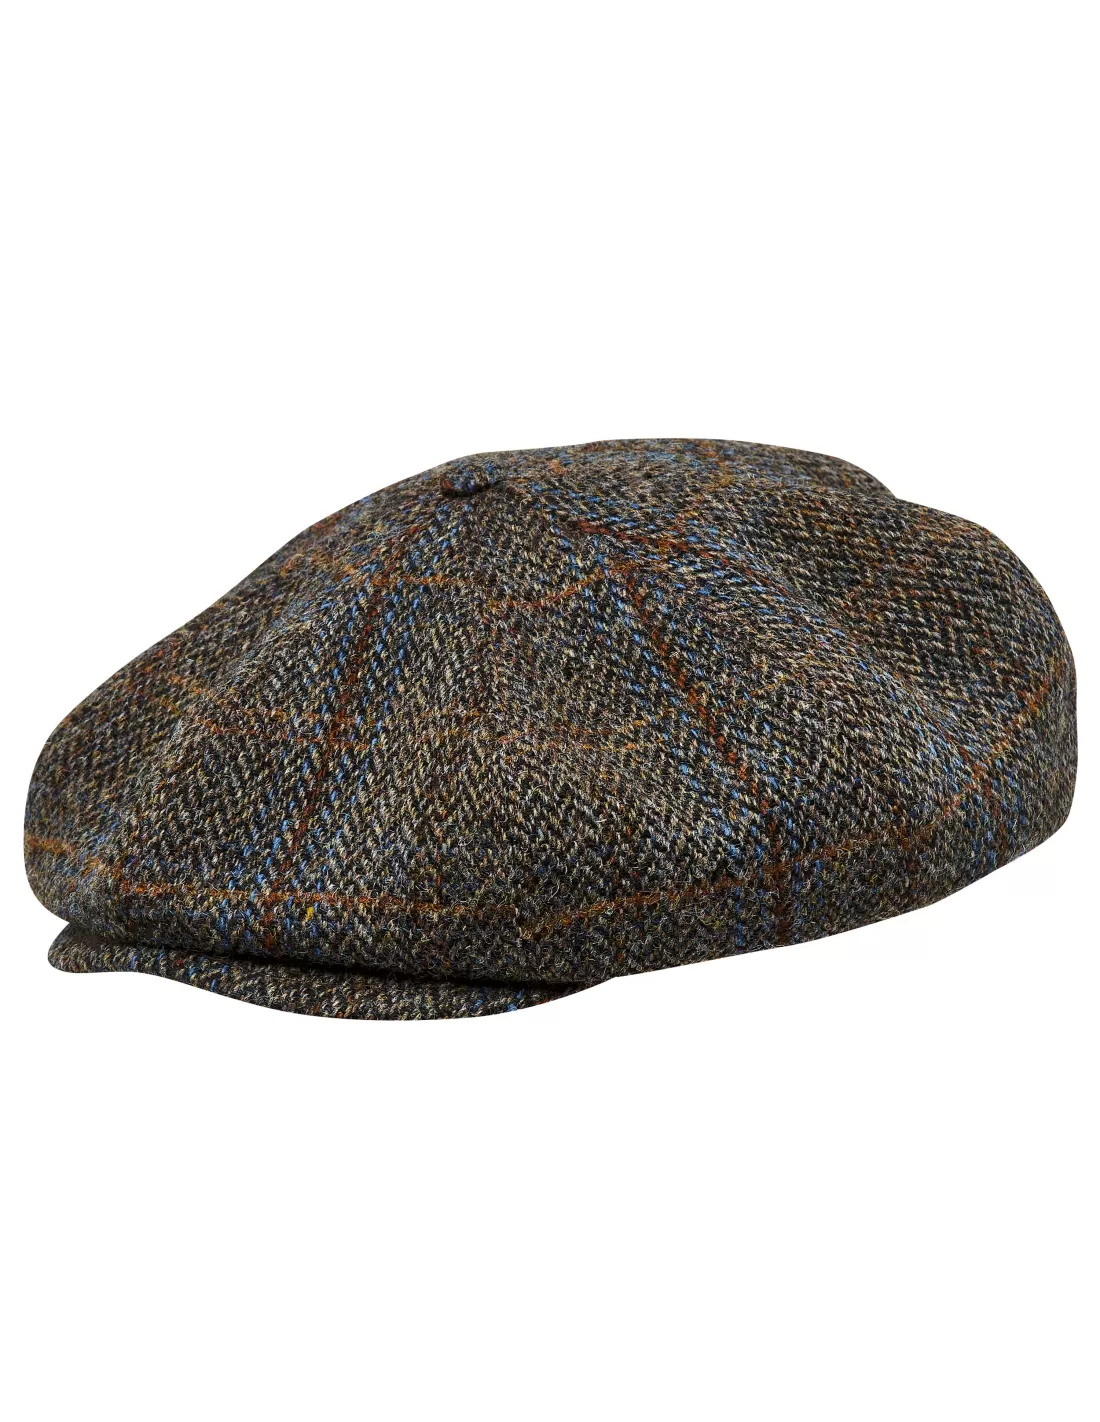 VERDE Scuro Cappello Harris Tweed 100% lana Cappello da Strillone anni'20 anni'30 Peaky Blinder Cap 